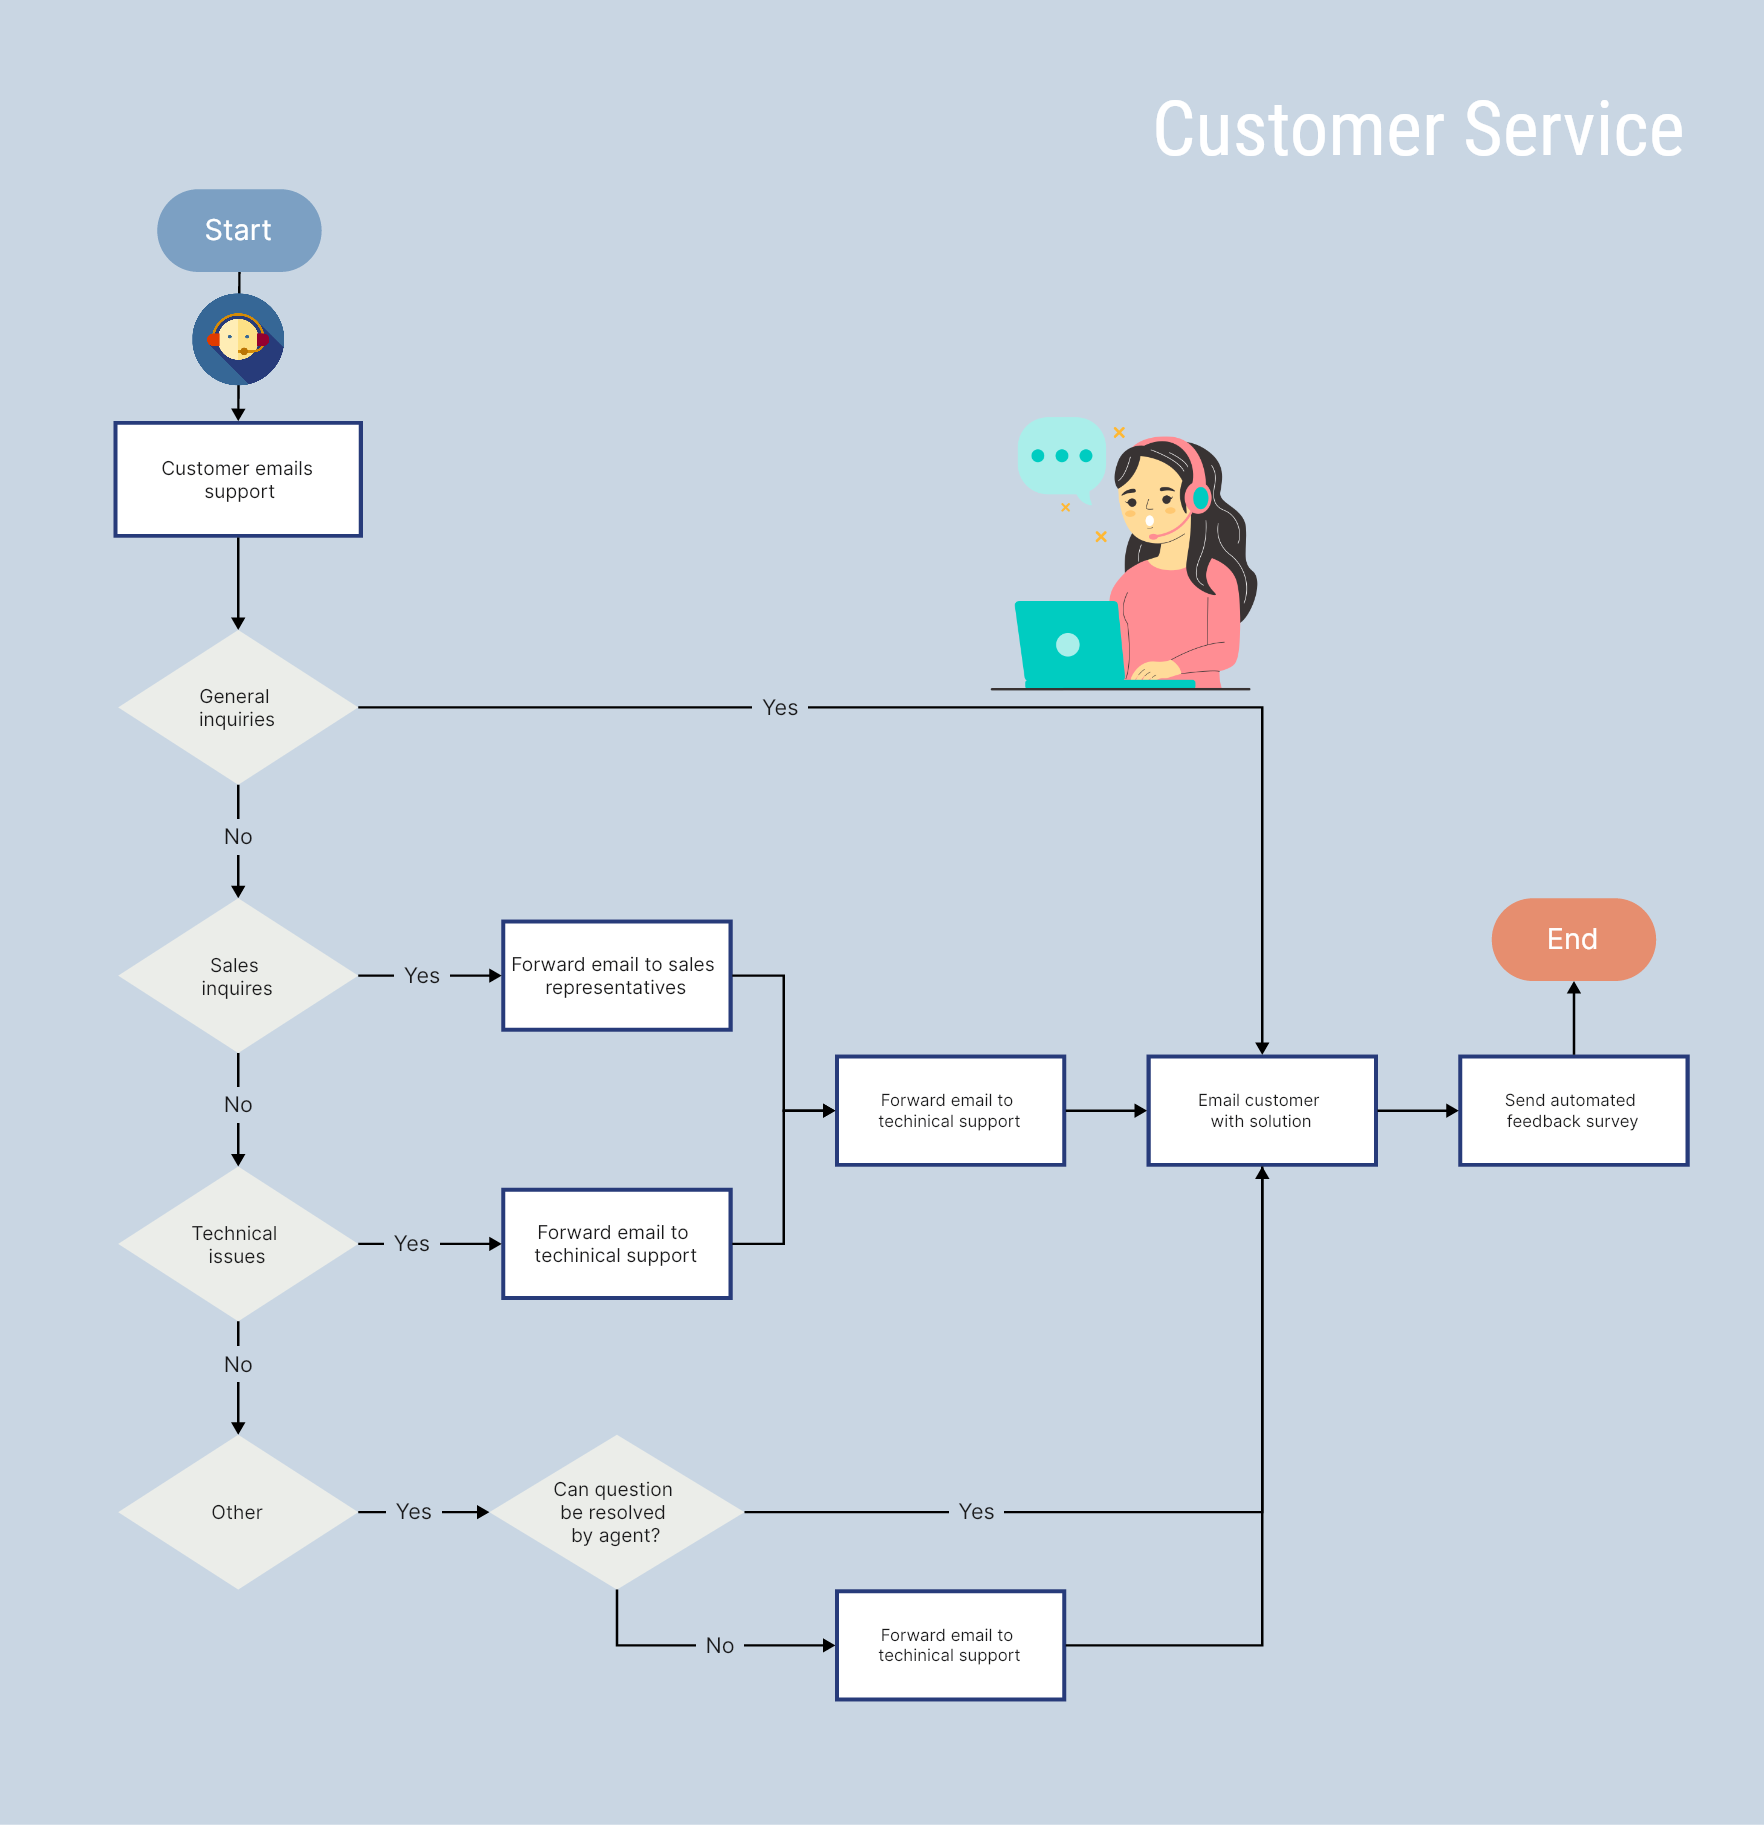 5. Diagrama de flujo de atención al cliente